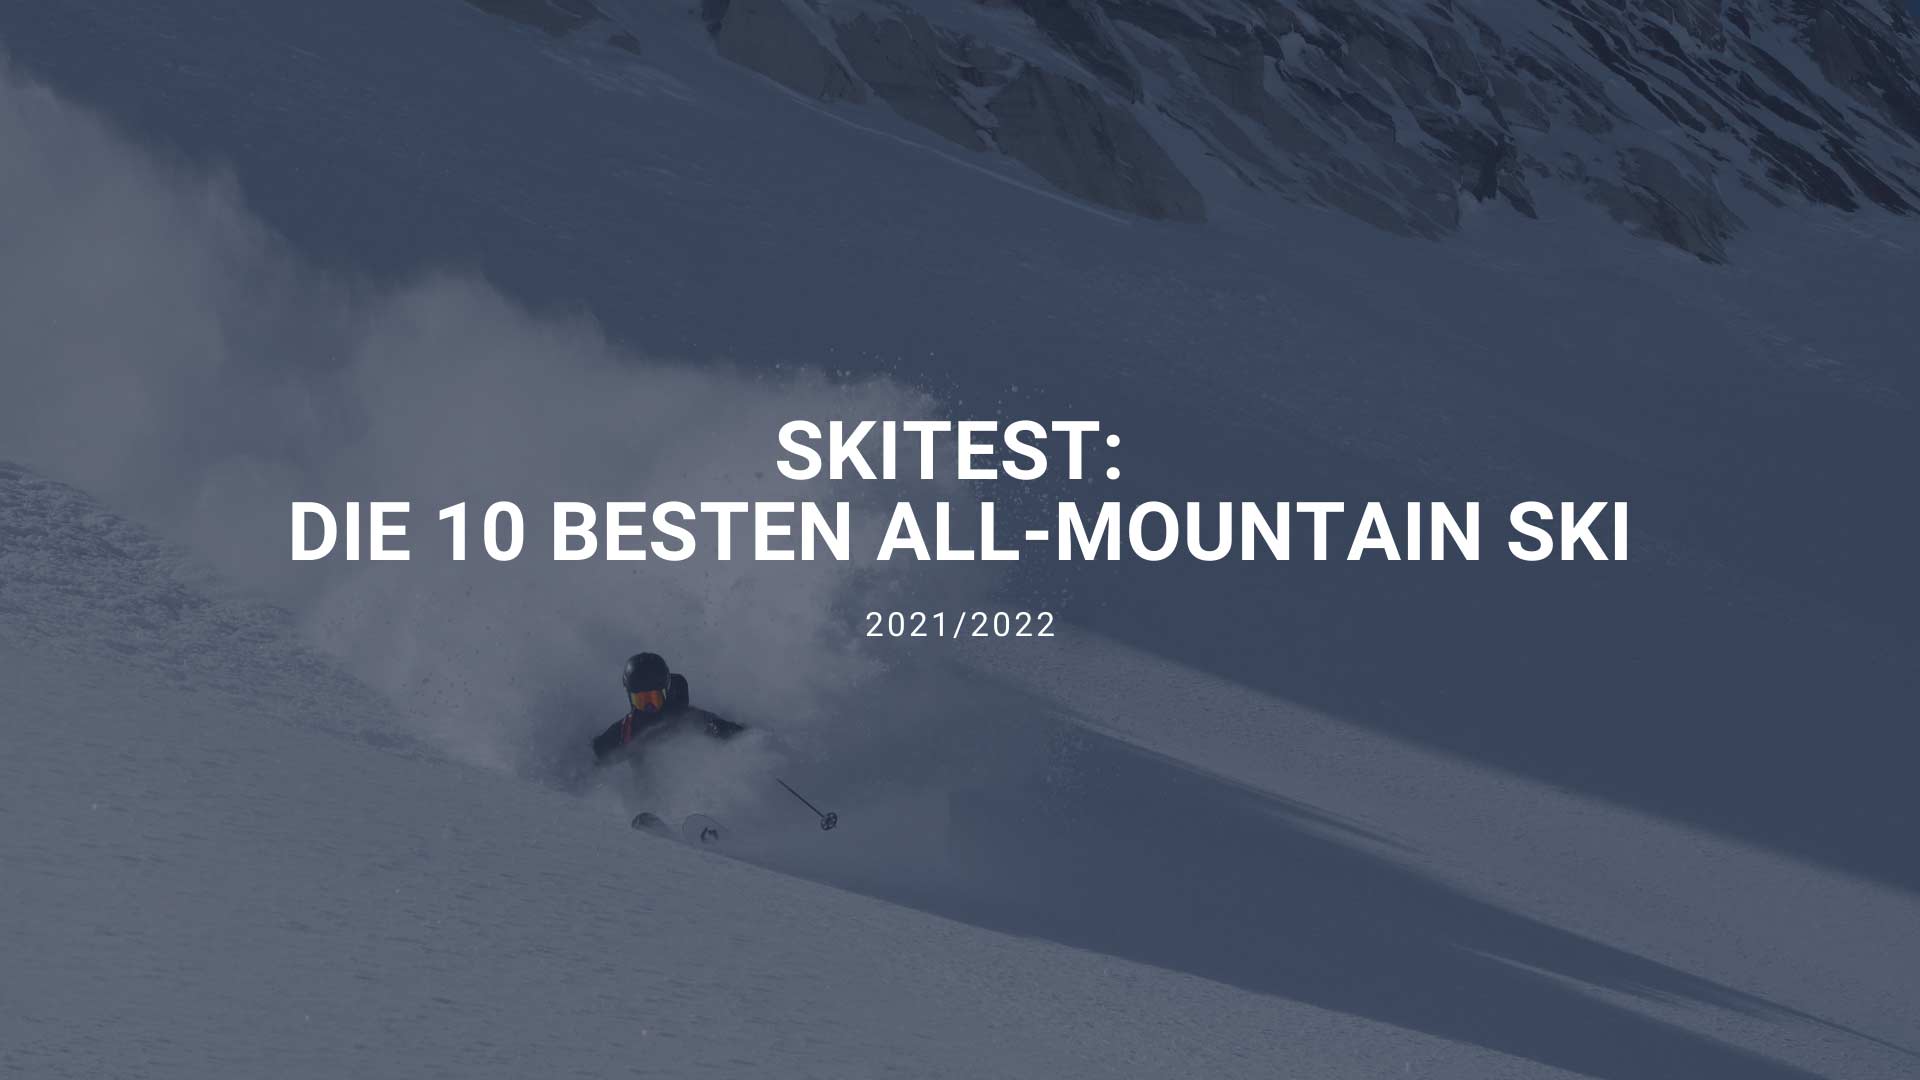 Skitest: Die besten All-Mountain Ski 2022 (Freeride/Piste)